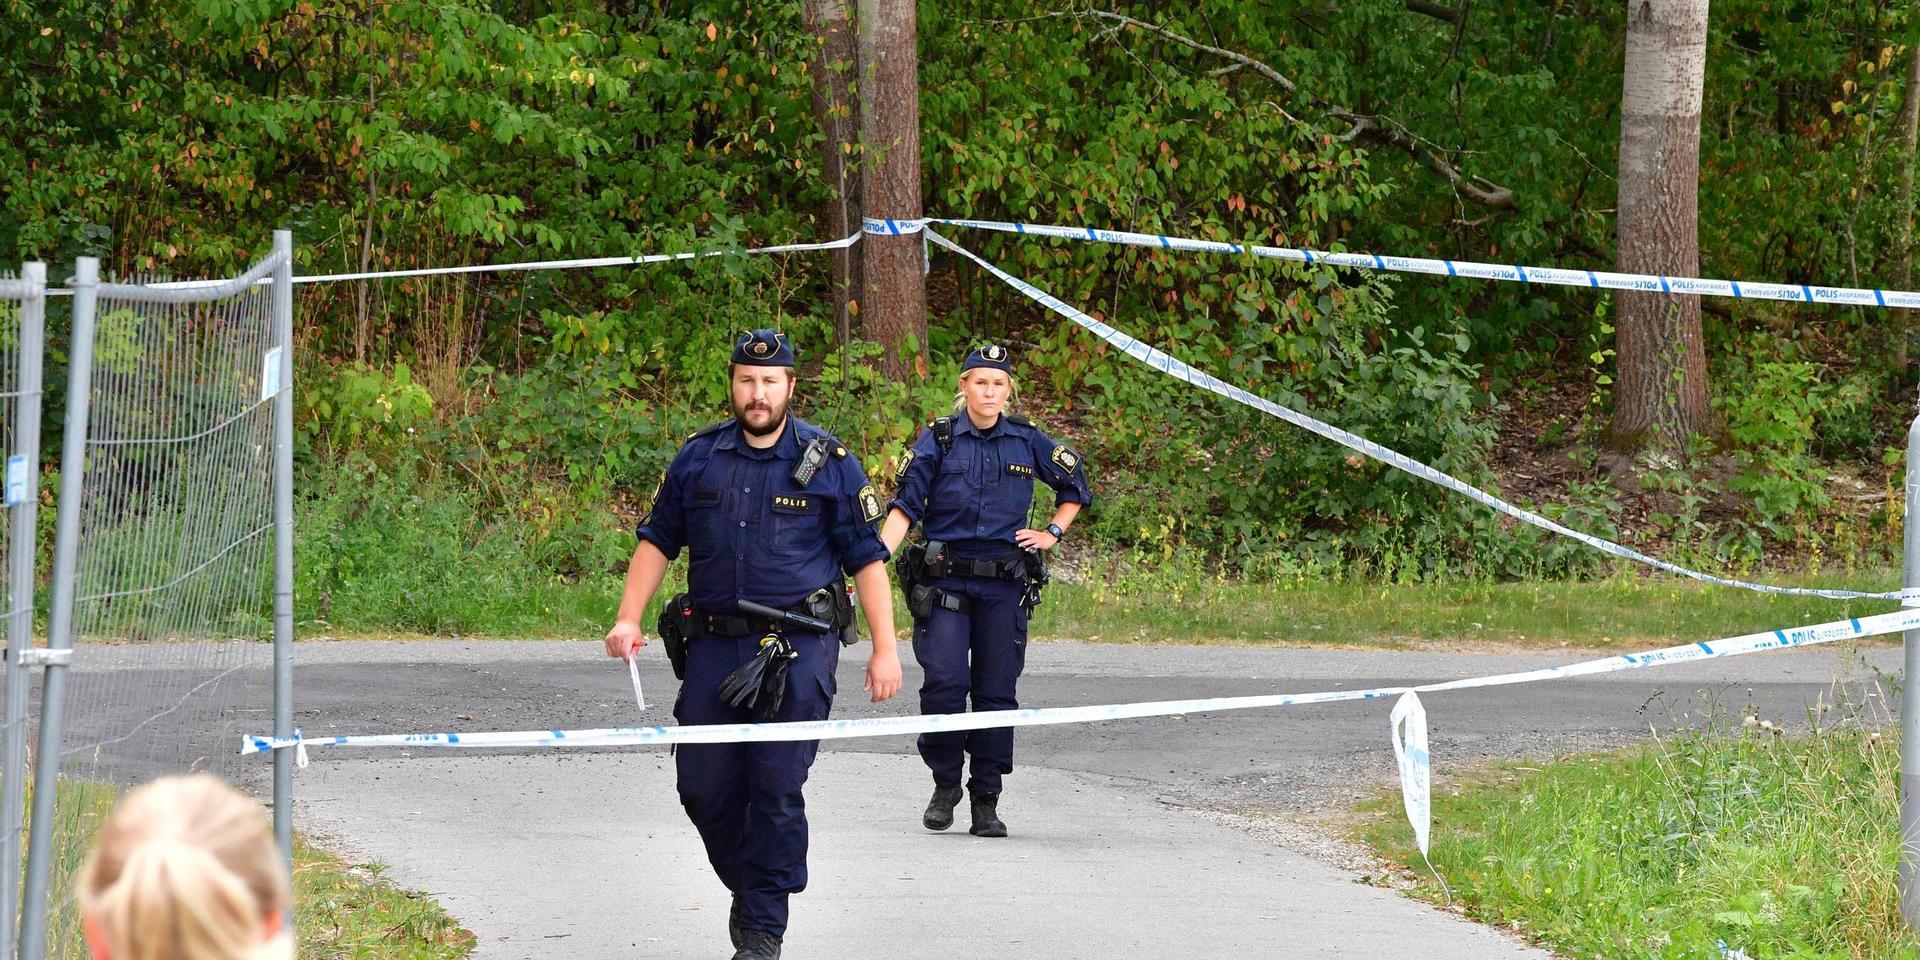 En pojke i tonåren hittades knivskuren utomhus i närheten av en skola i Solna, norr om Stockholm. 